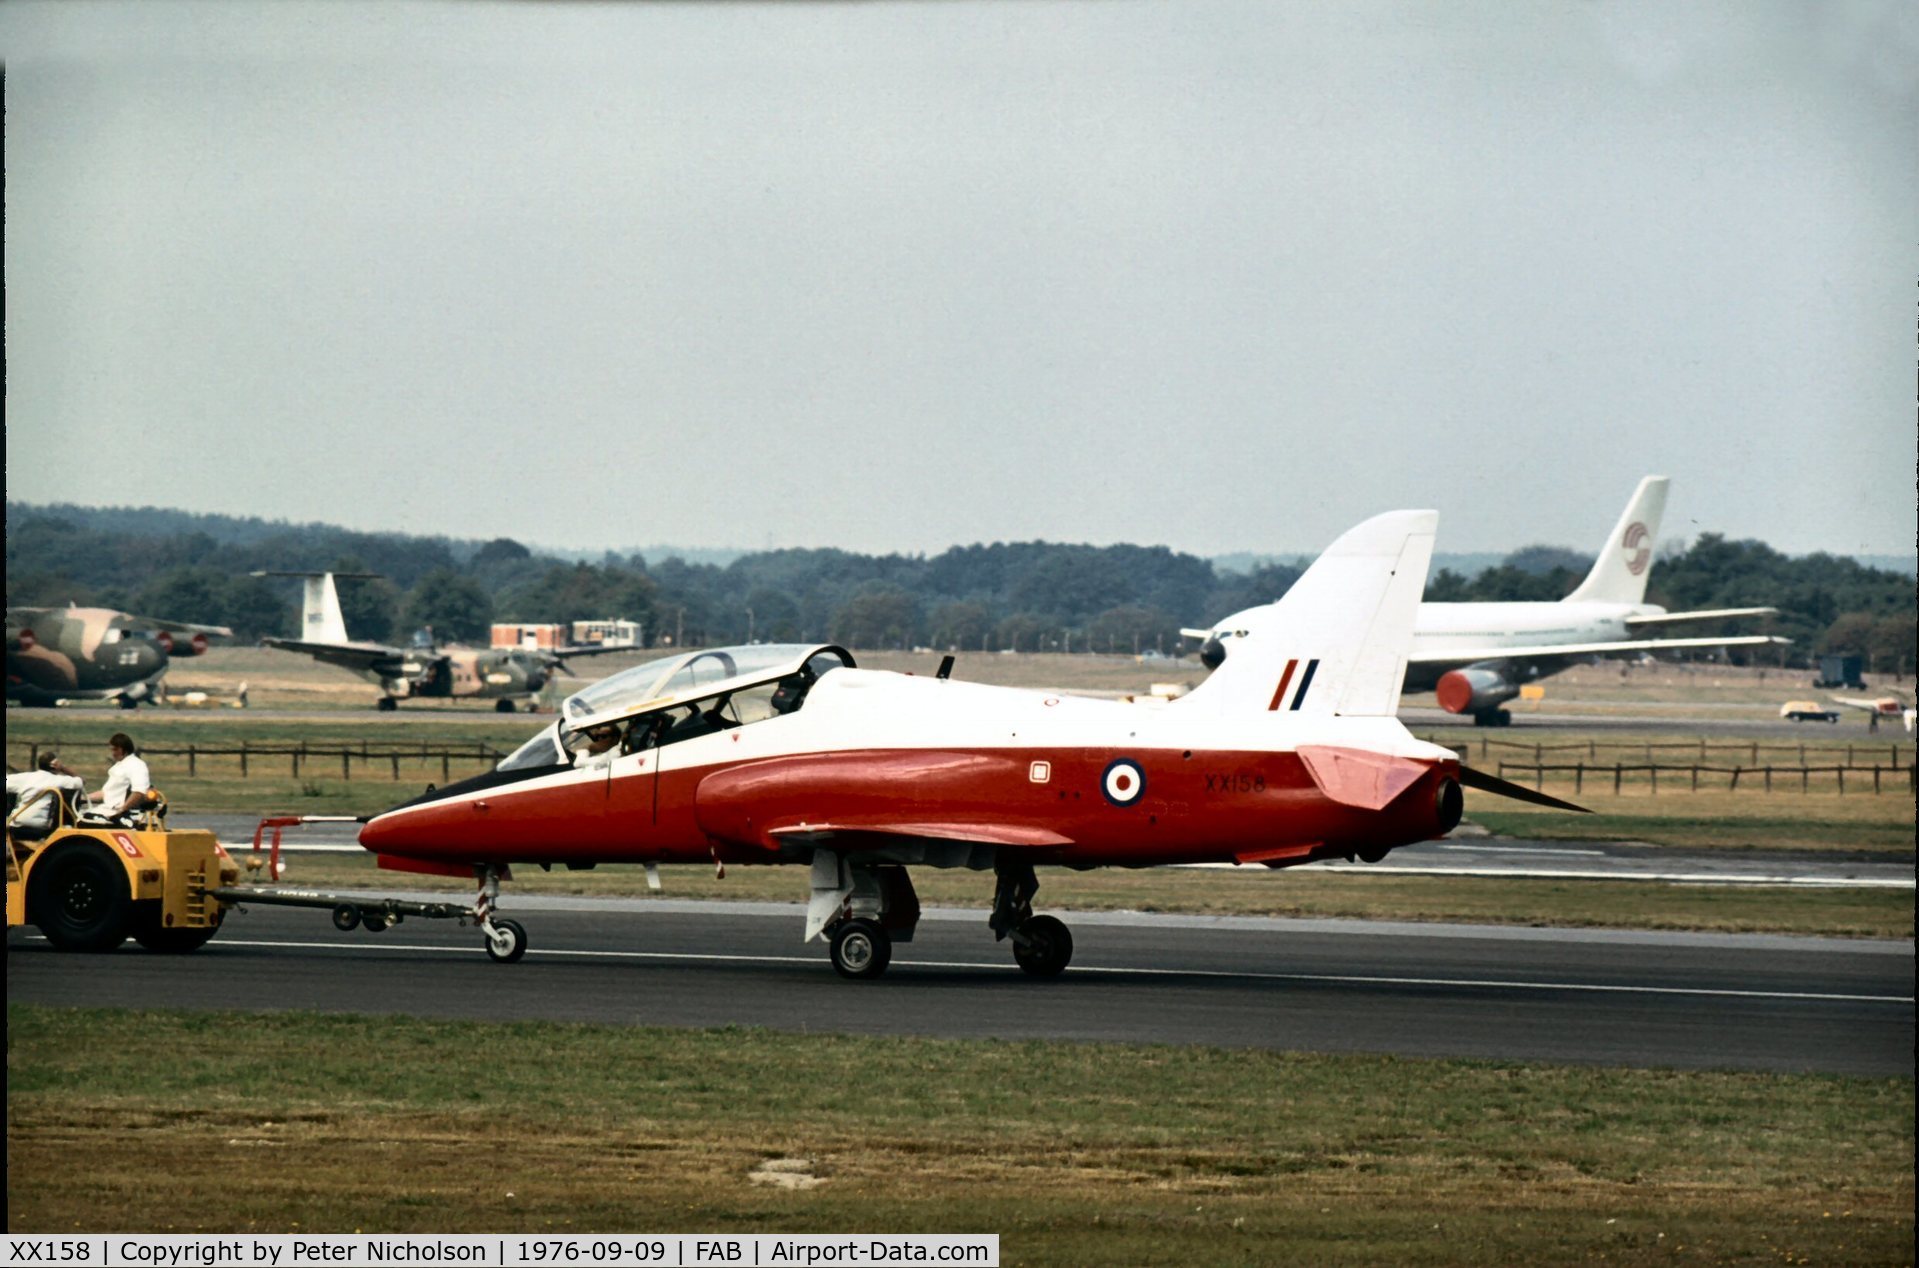 XX158, 1982 Hawker Siddeley Hawk T.1 C/N 004/312004, As displayed at the 1976 Farnborough Airshow.